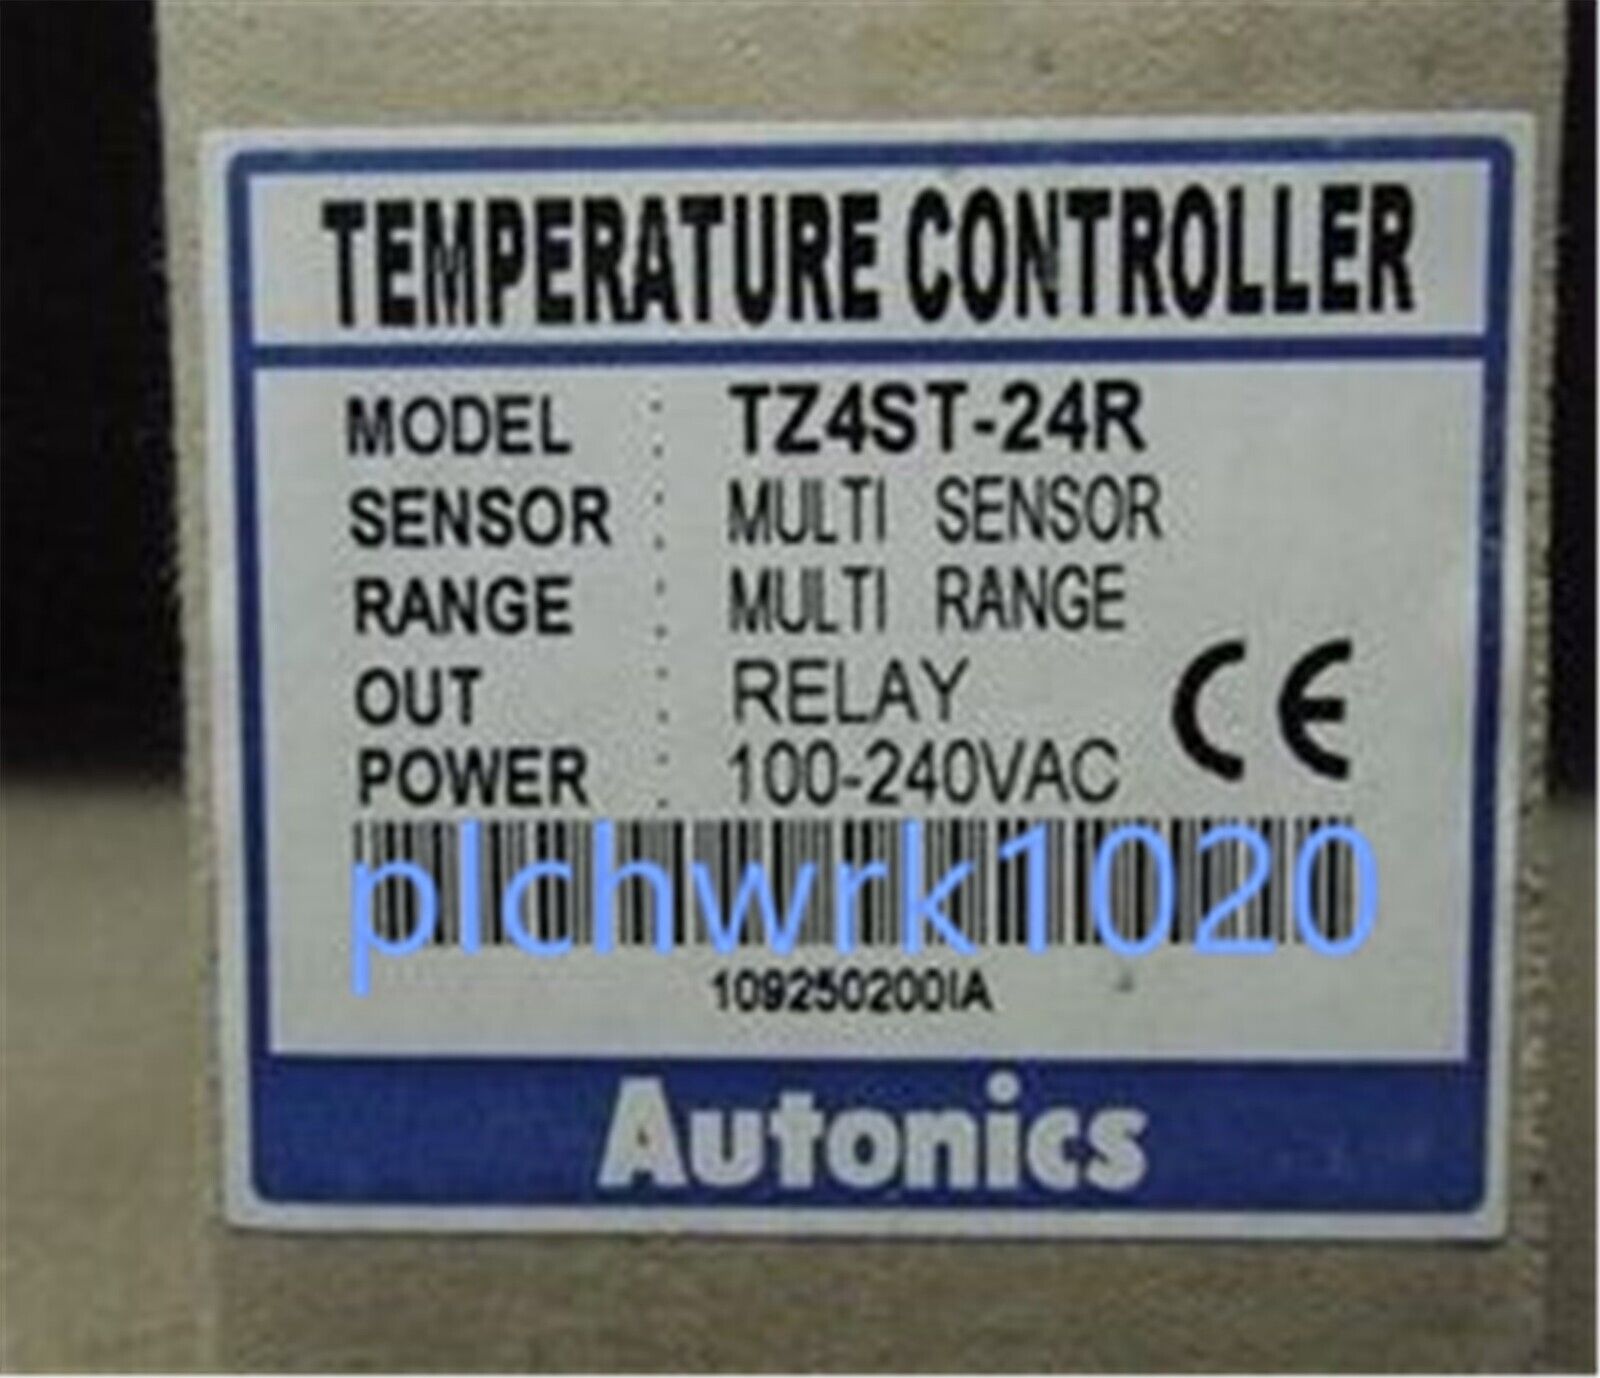 1 PCS NEW IN BOX Autonics Temperature Controller TZ4ST-24R